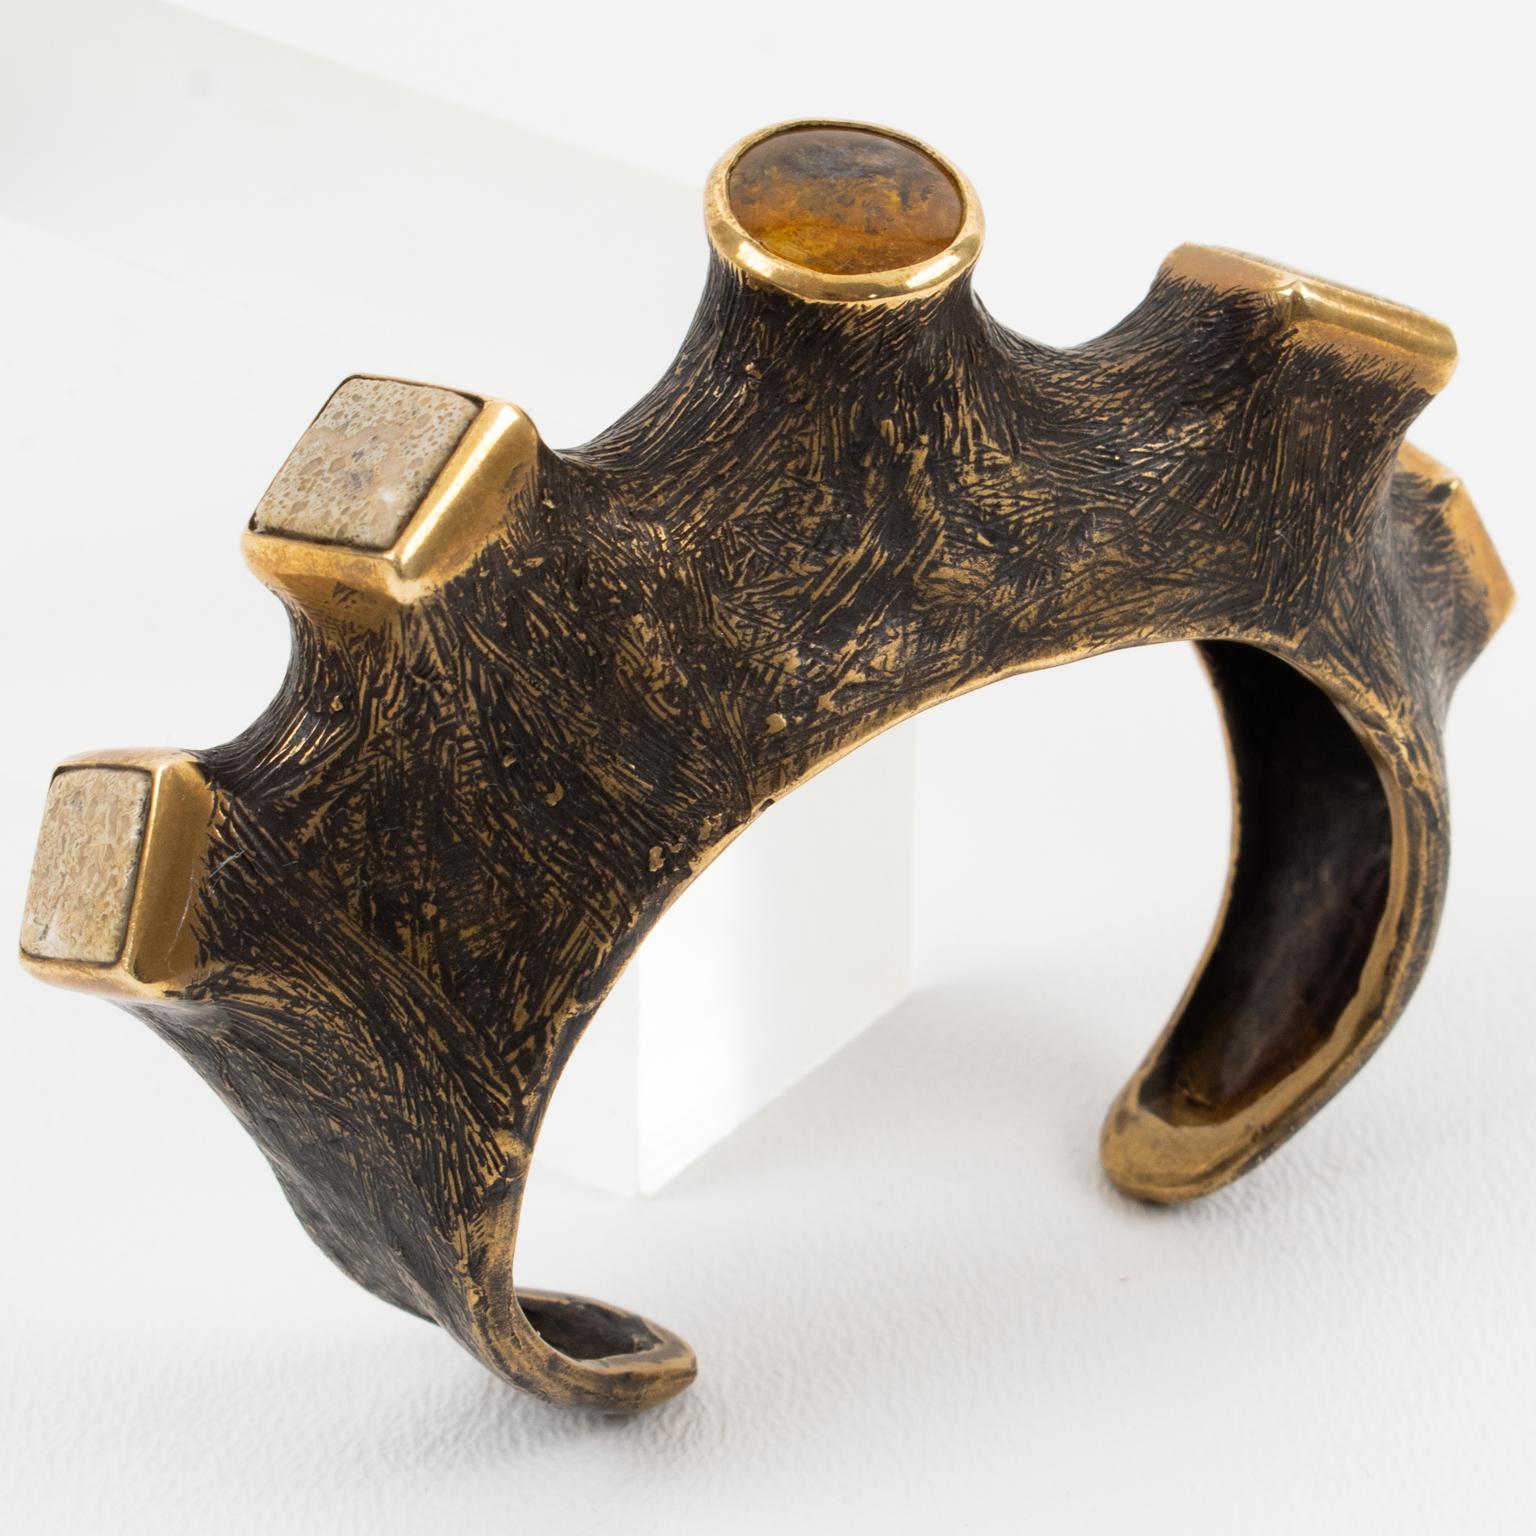 Cet étonnant bracelet manchette sculptural en bronze brutaliste a été fabriqué à la main par un artiste français dans les années 1980. Il s'agit d'une pièce unique d'inspiration organique. Le bracelet présente une branche d'arbre sculptée et